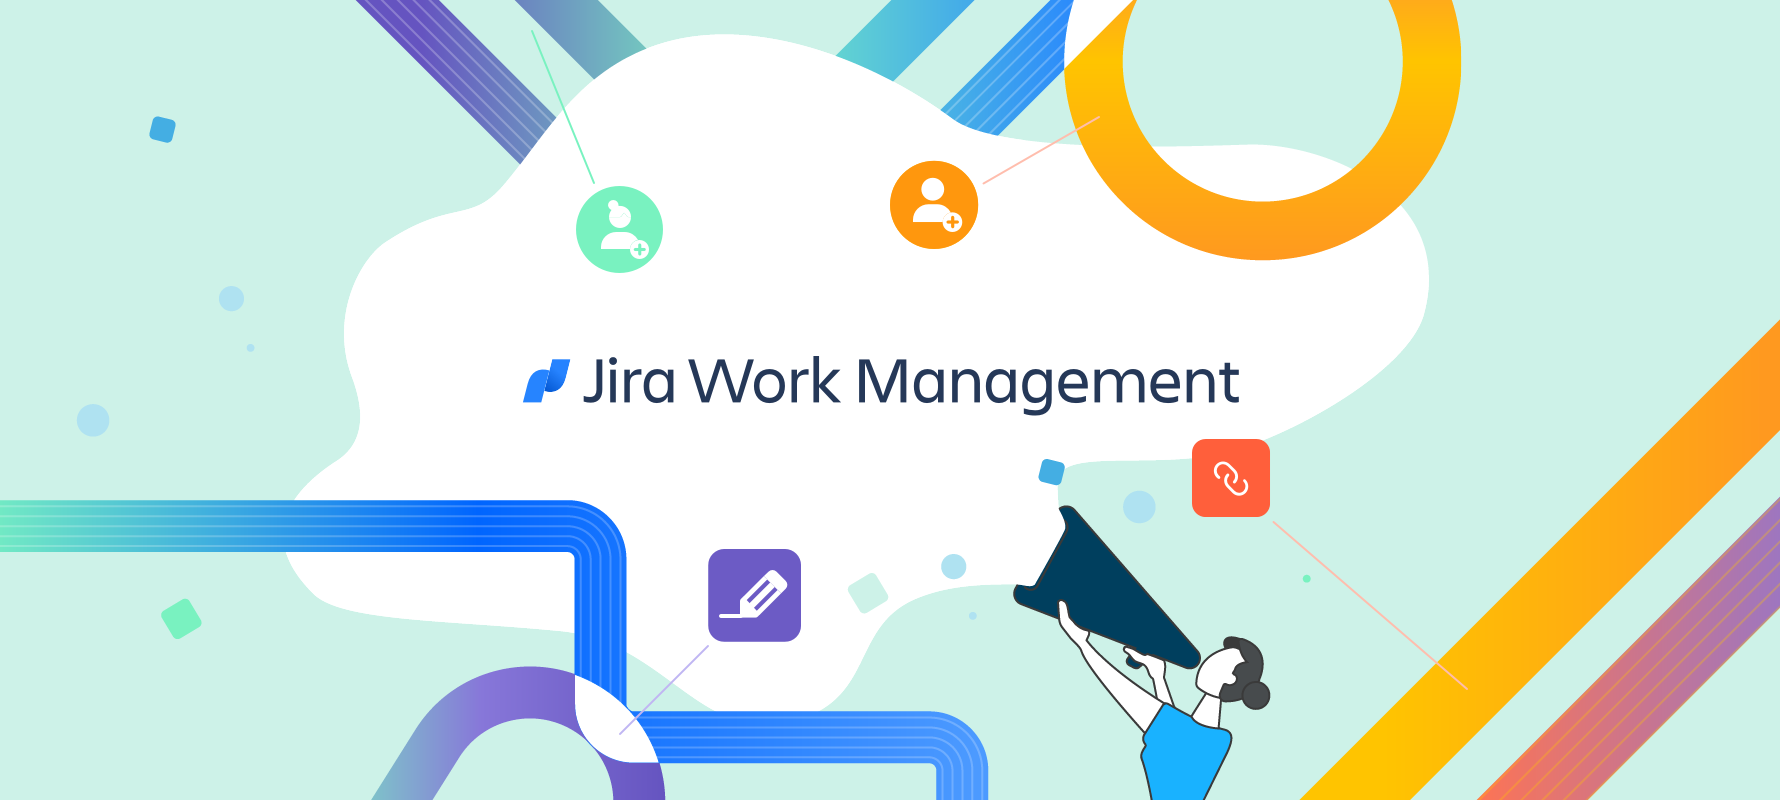 Werbebanner für das Tool Jira Work Management von Atlassian.